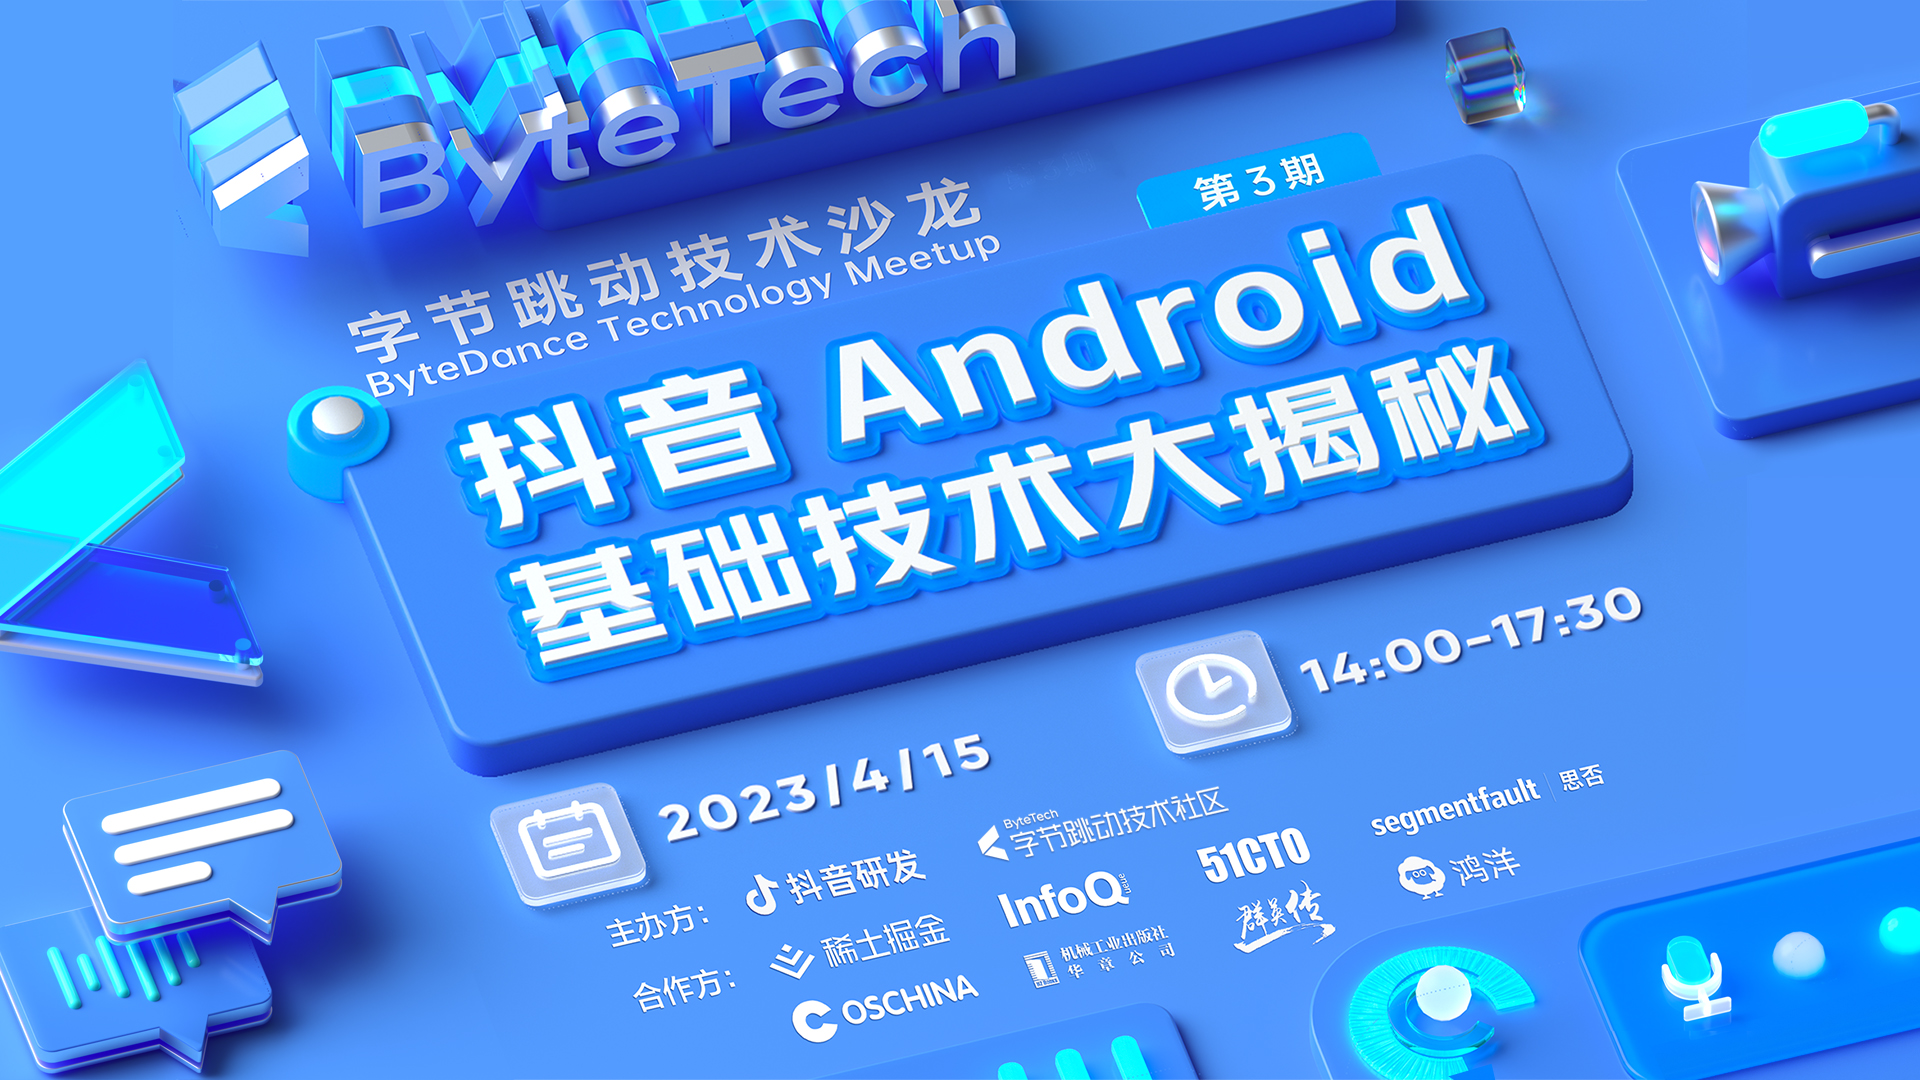 抖音 Android 基础技术大揭秘 第3期